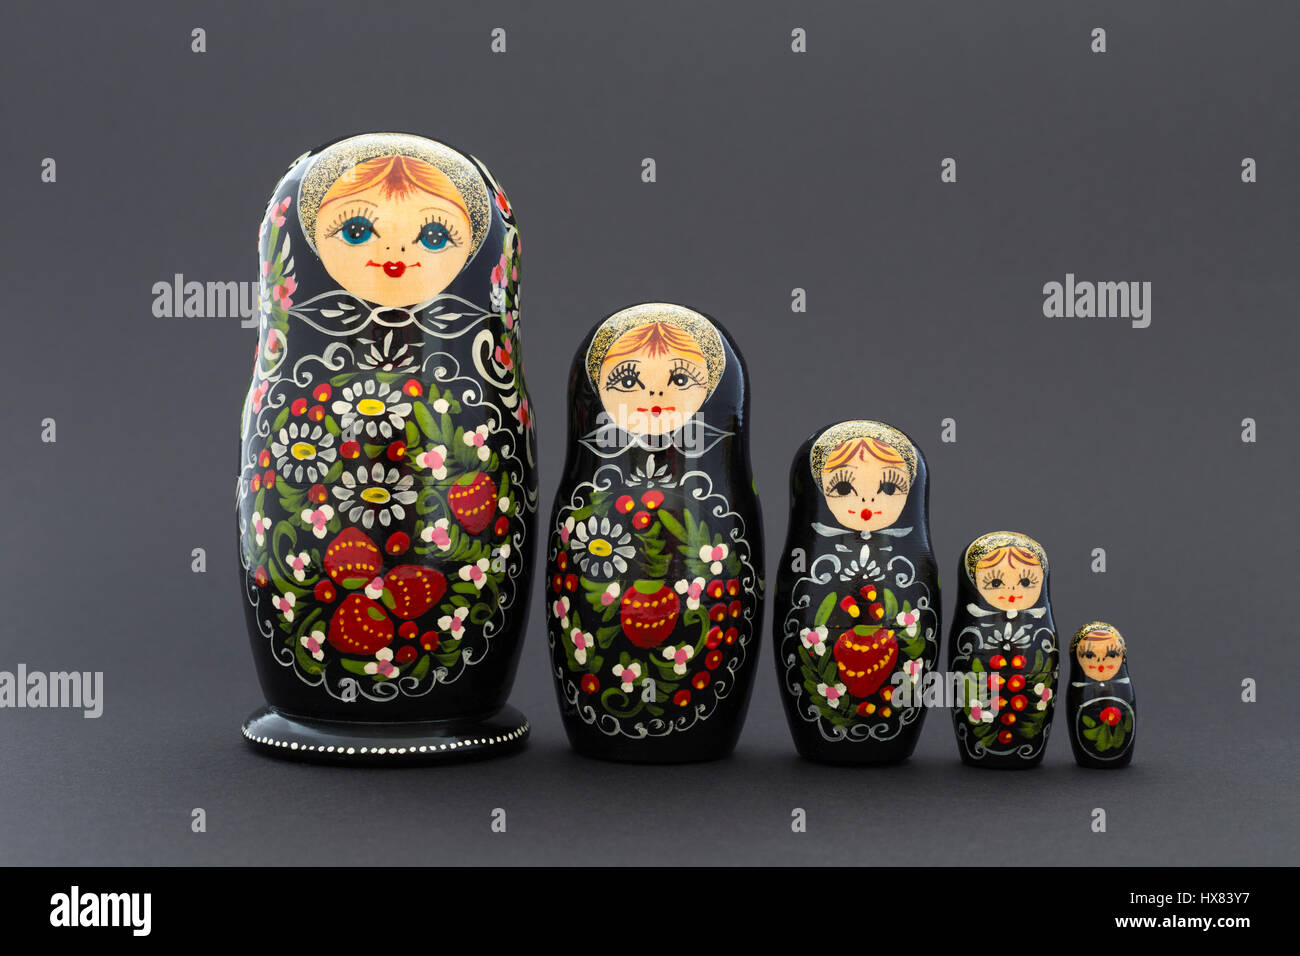 Hermosa negro matryoshka nesting rusa dolls (muñecas) con blanco, verde y rojo pintura delante de un fondo oscuro Foto de stock